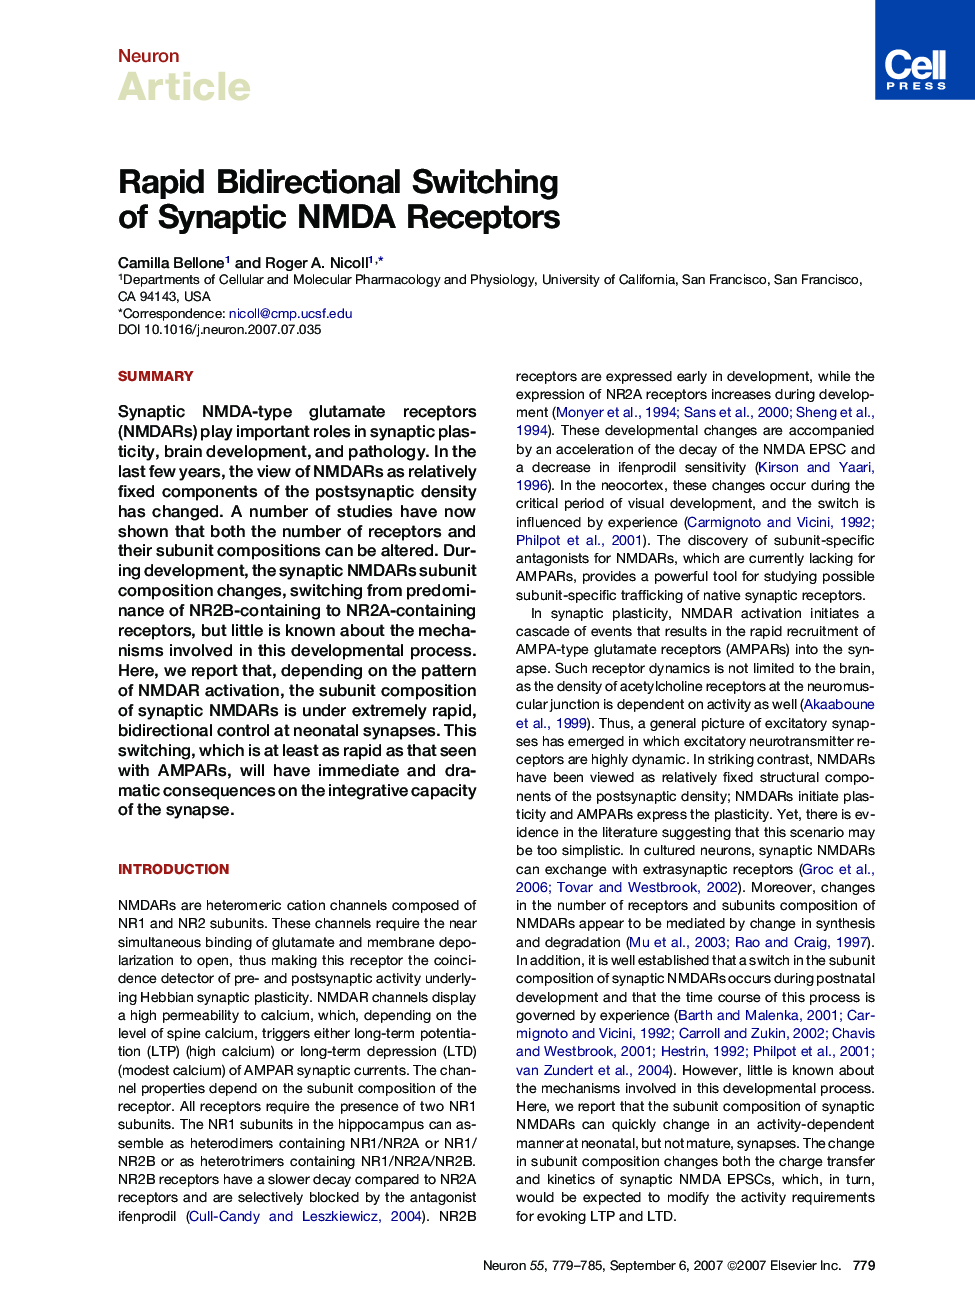 Rapid Bidirectional Switching of Synaptic NMDA Receptors